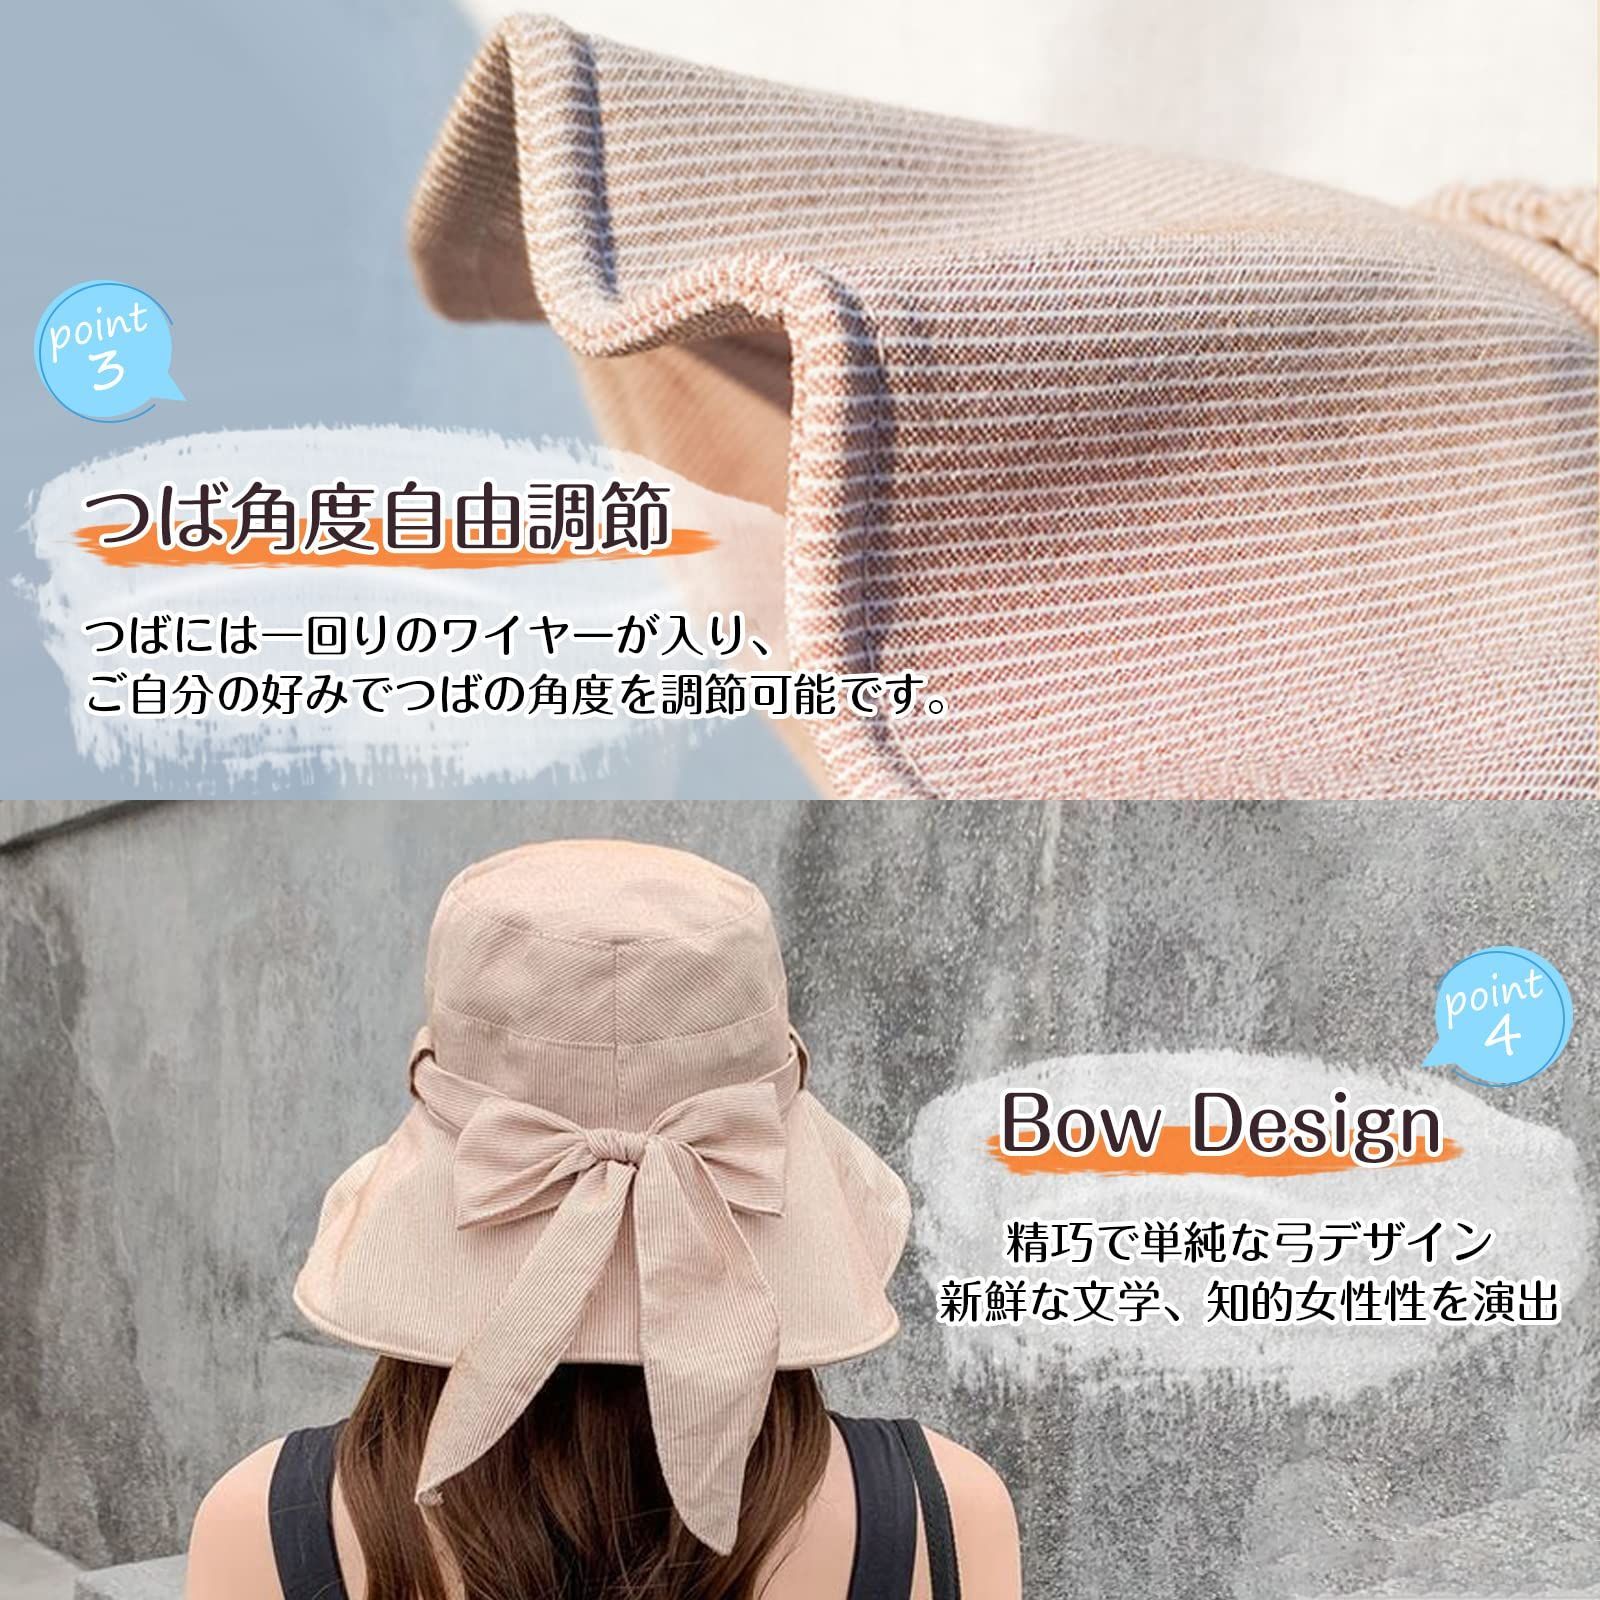 【色: カーキ】Candybay UVカット 帽子 レディース 日焼け防止 ハッ